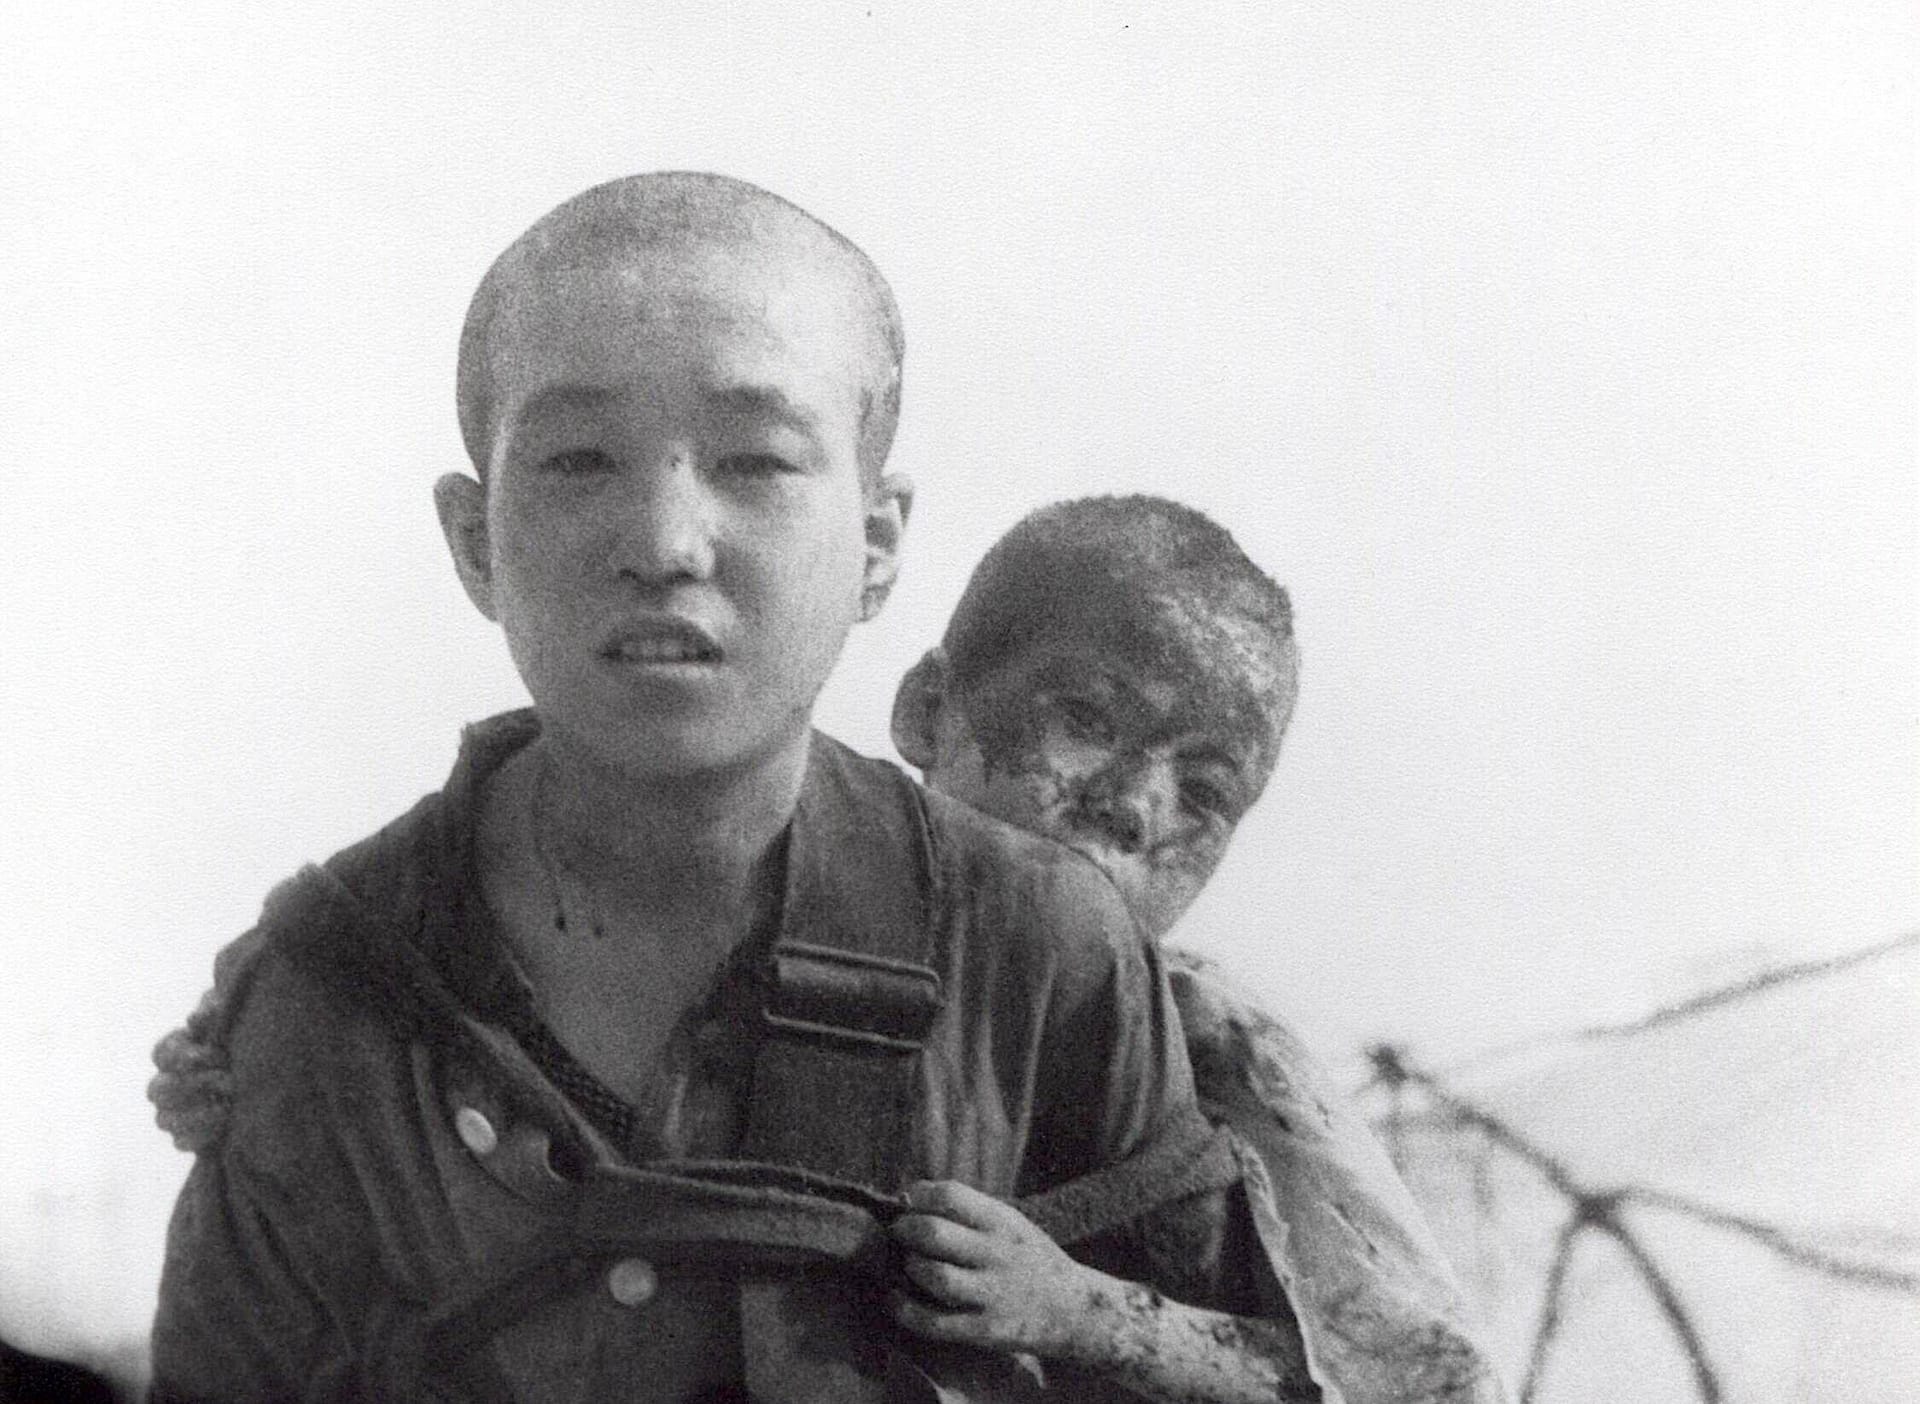 August 1945: Zwei Brüder, die den Atombombeneinschlag von Nagasaki überlebt haben.